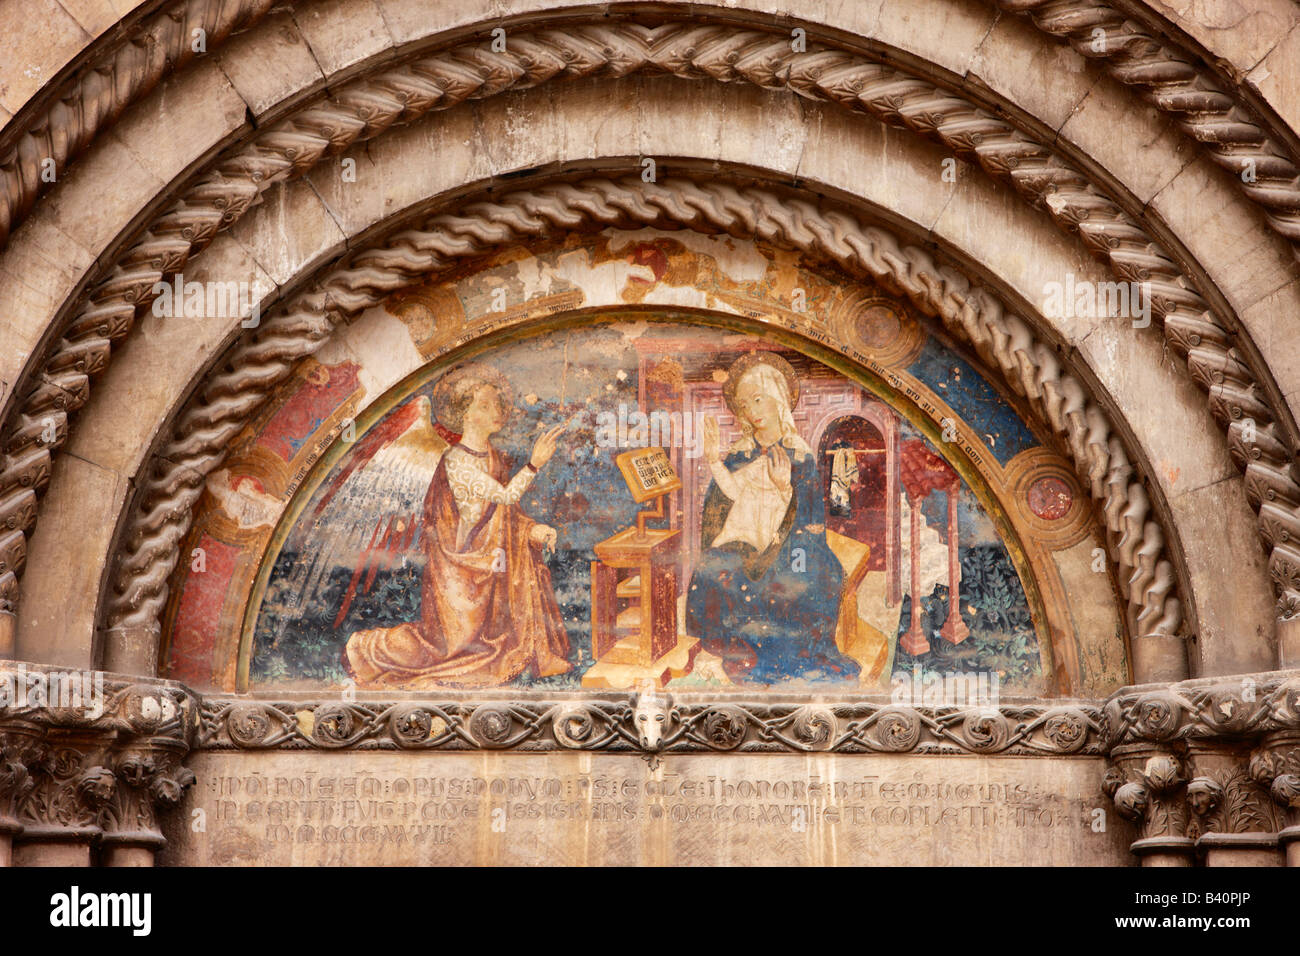 Une fresque au-dessus de la porte de l'église de Viso, Ombrie, Italie Banque D'Images